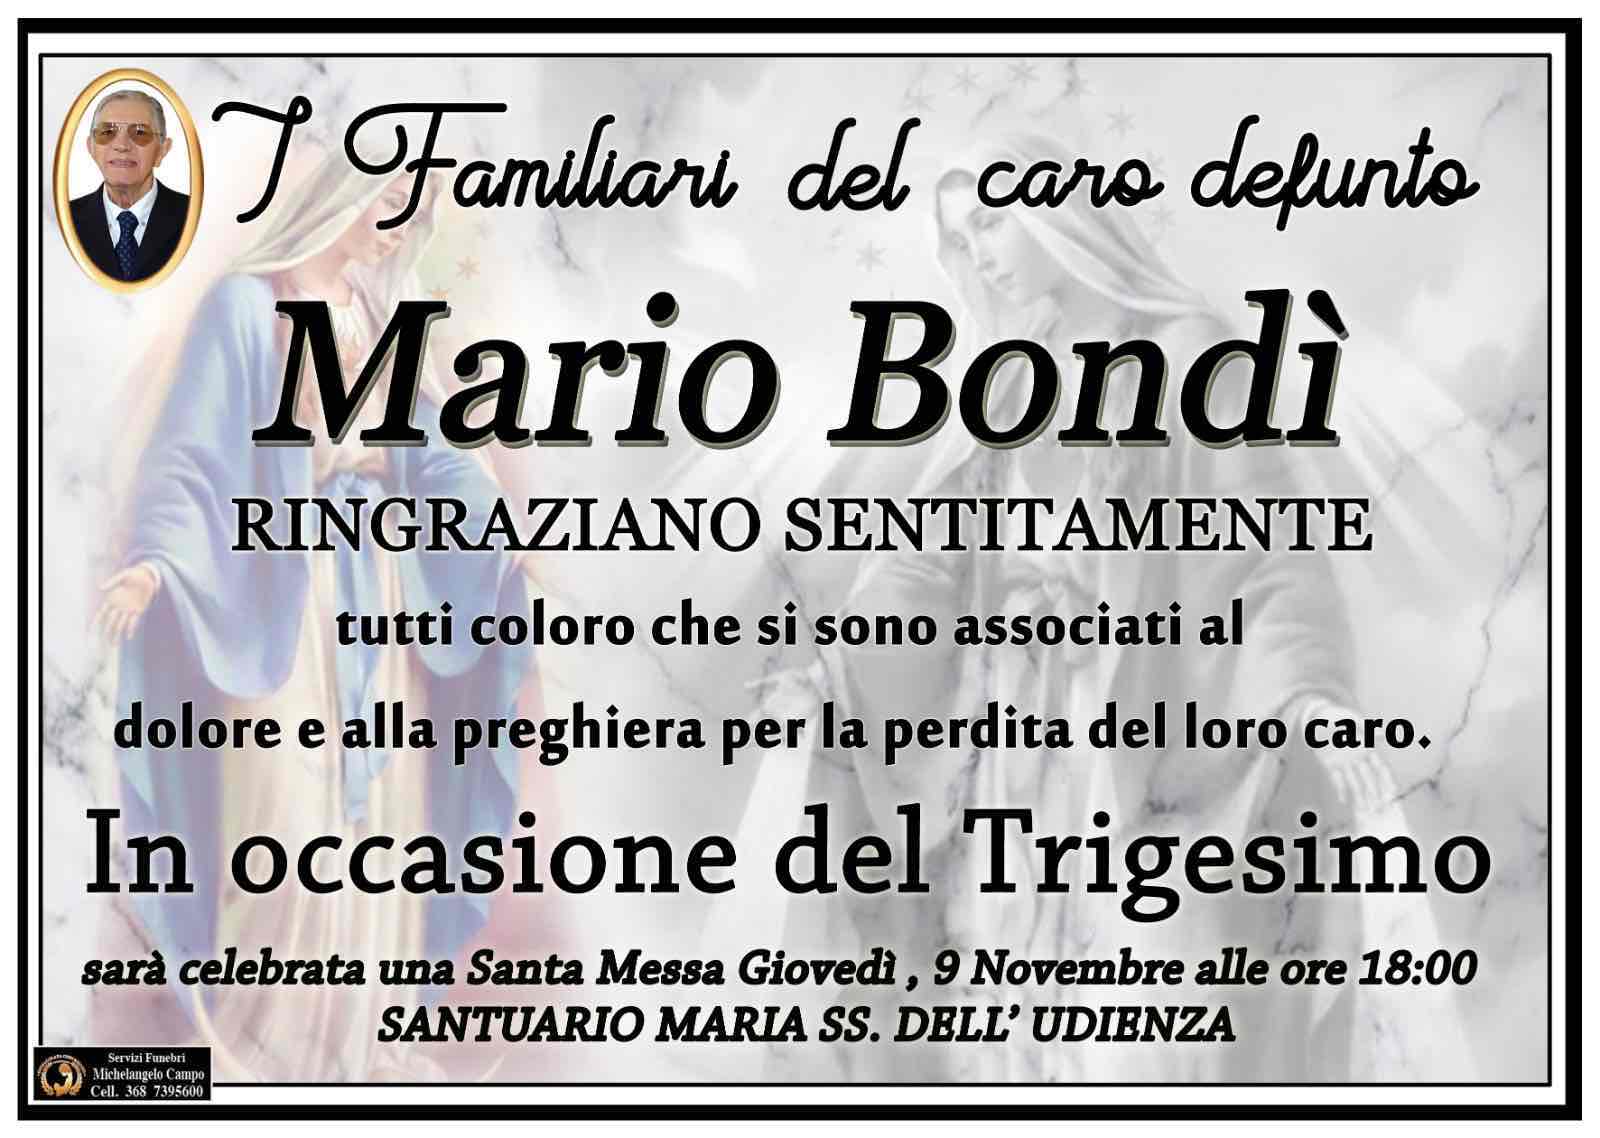 Mario Bondi